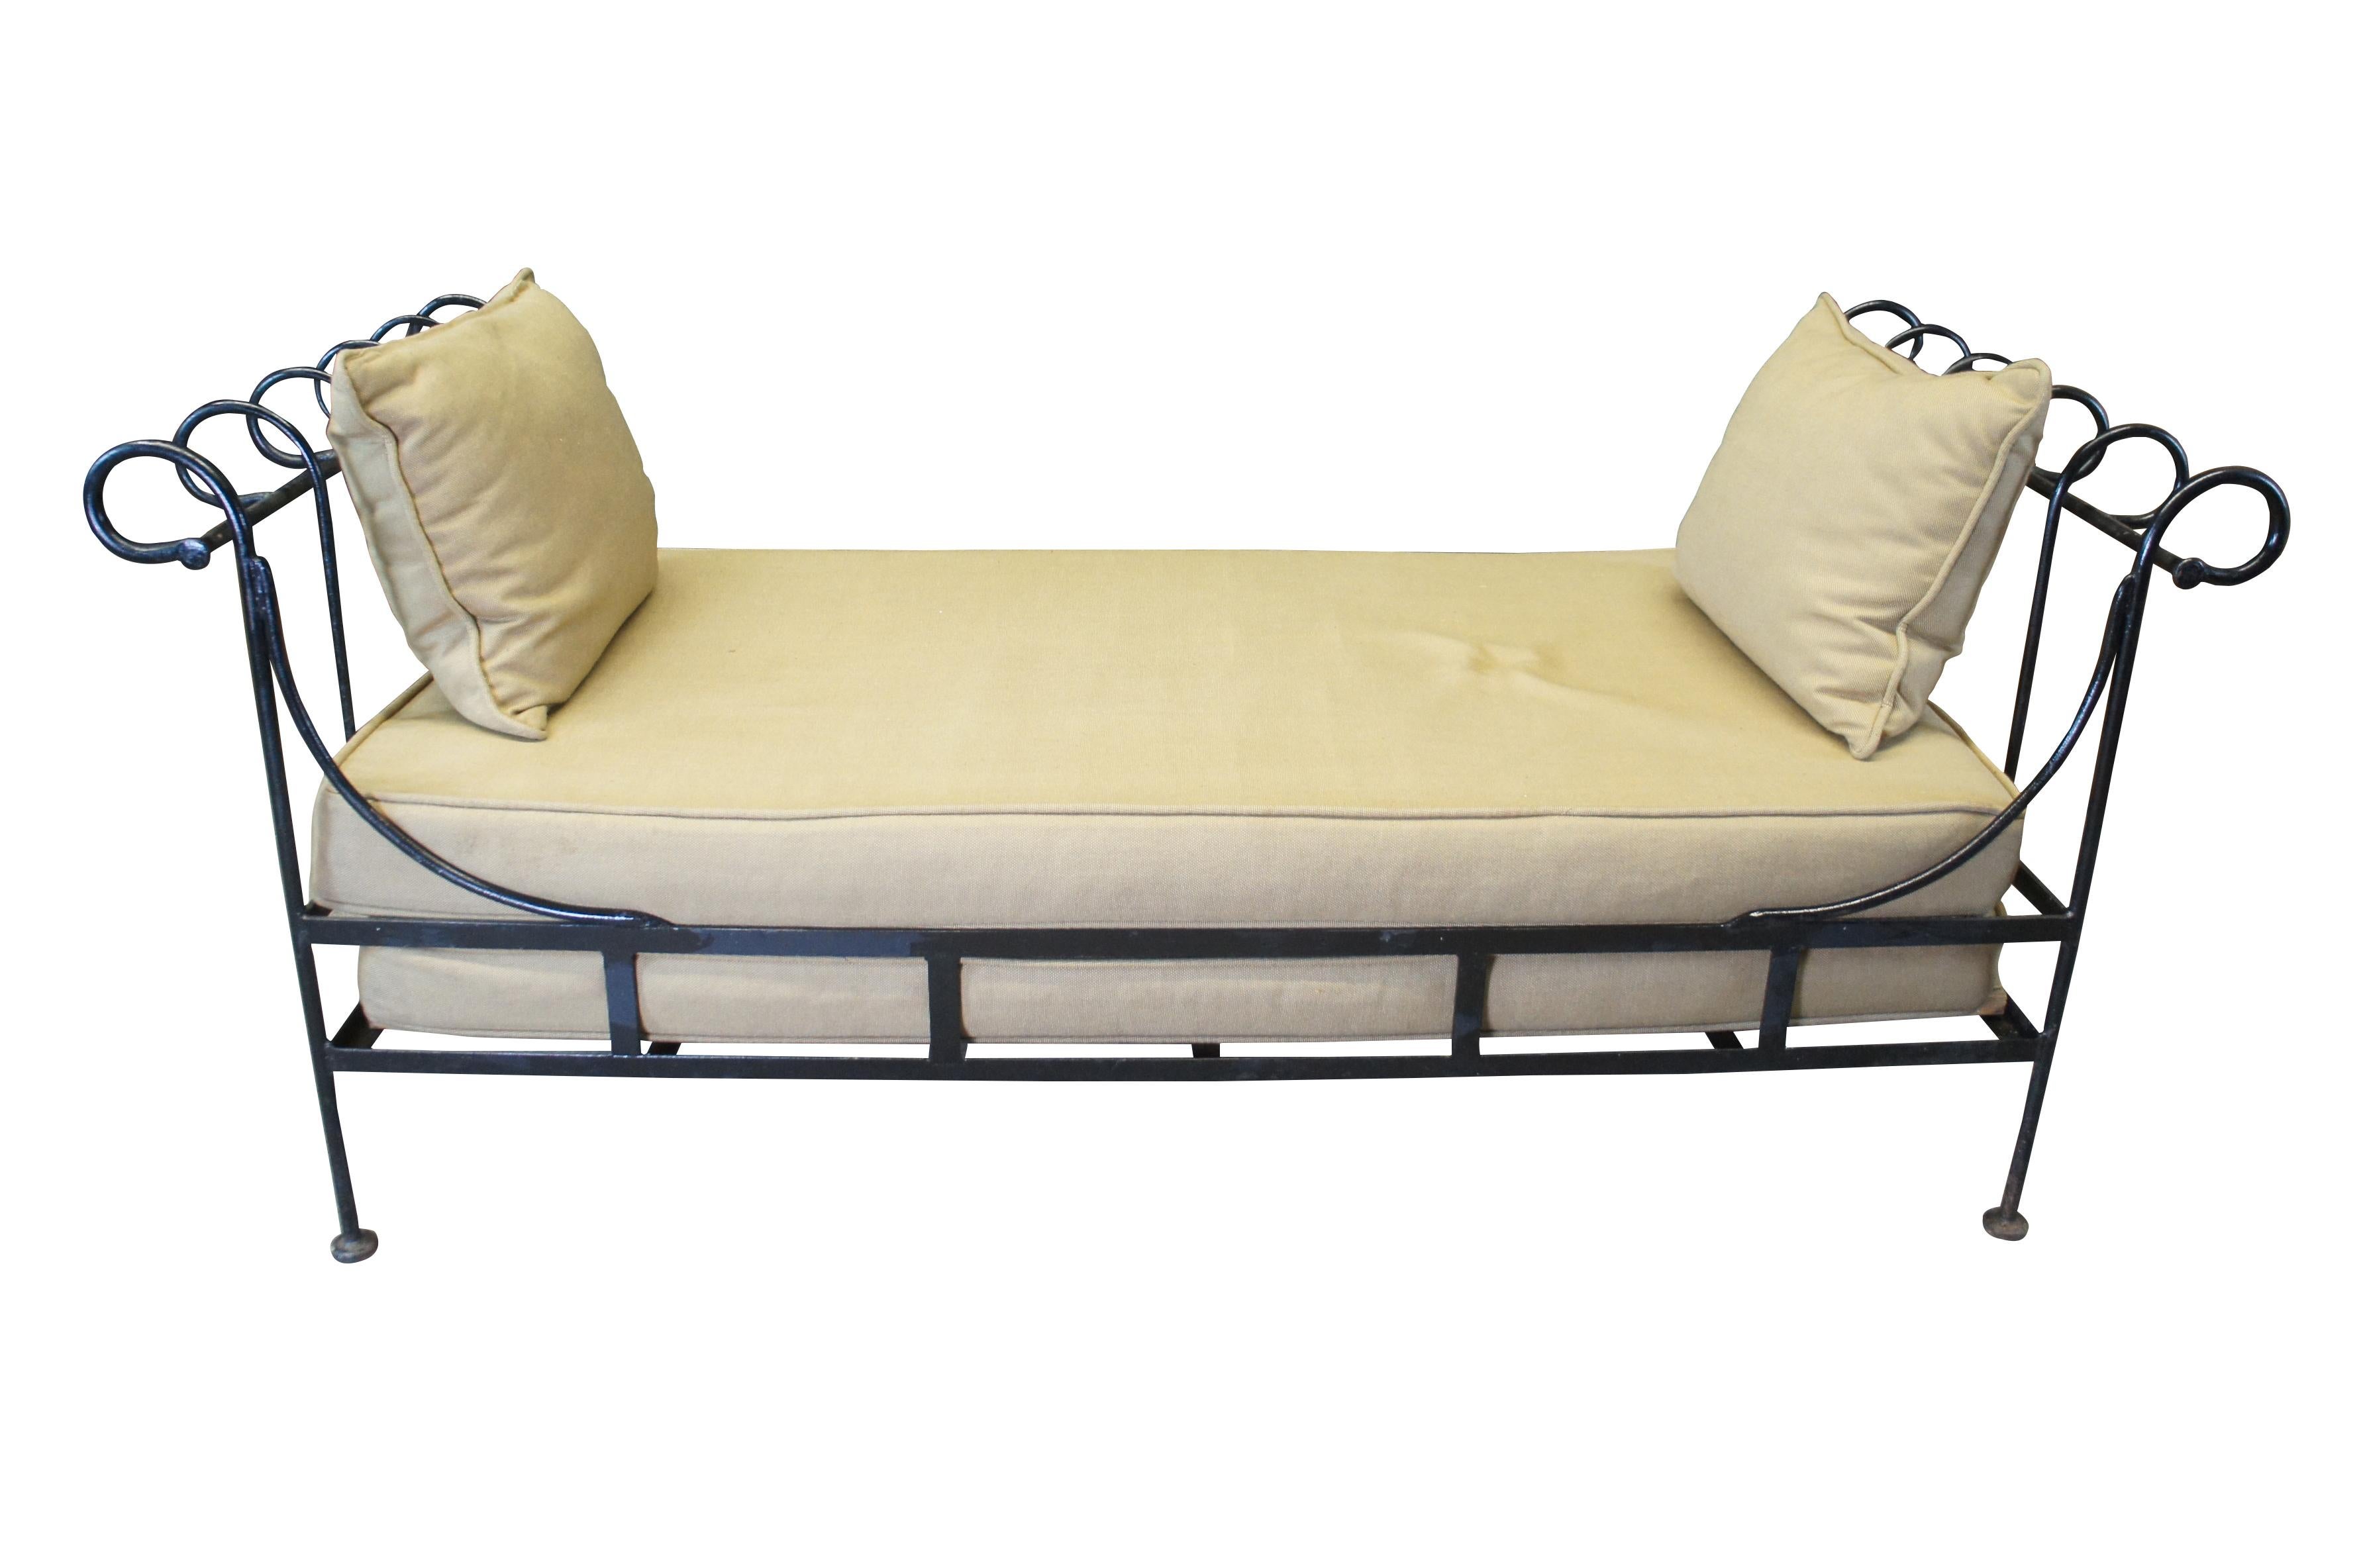 Neoklassizistisches Directoire-Stil-Sofa für den Außenbereich im Vintage-Stil.  Hergestellt aus Eisen mit verschnörkelten Akzenten und wasserdichten Kissen.

ABMESSUNGEN

31